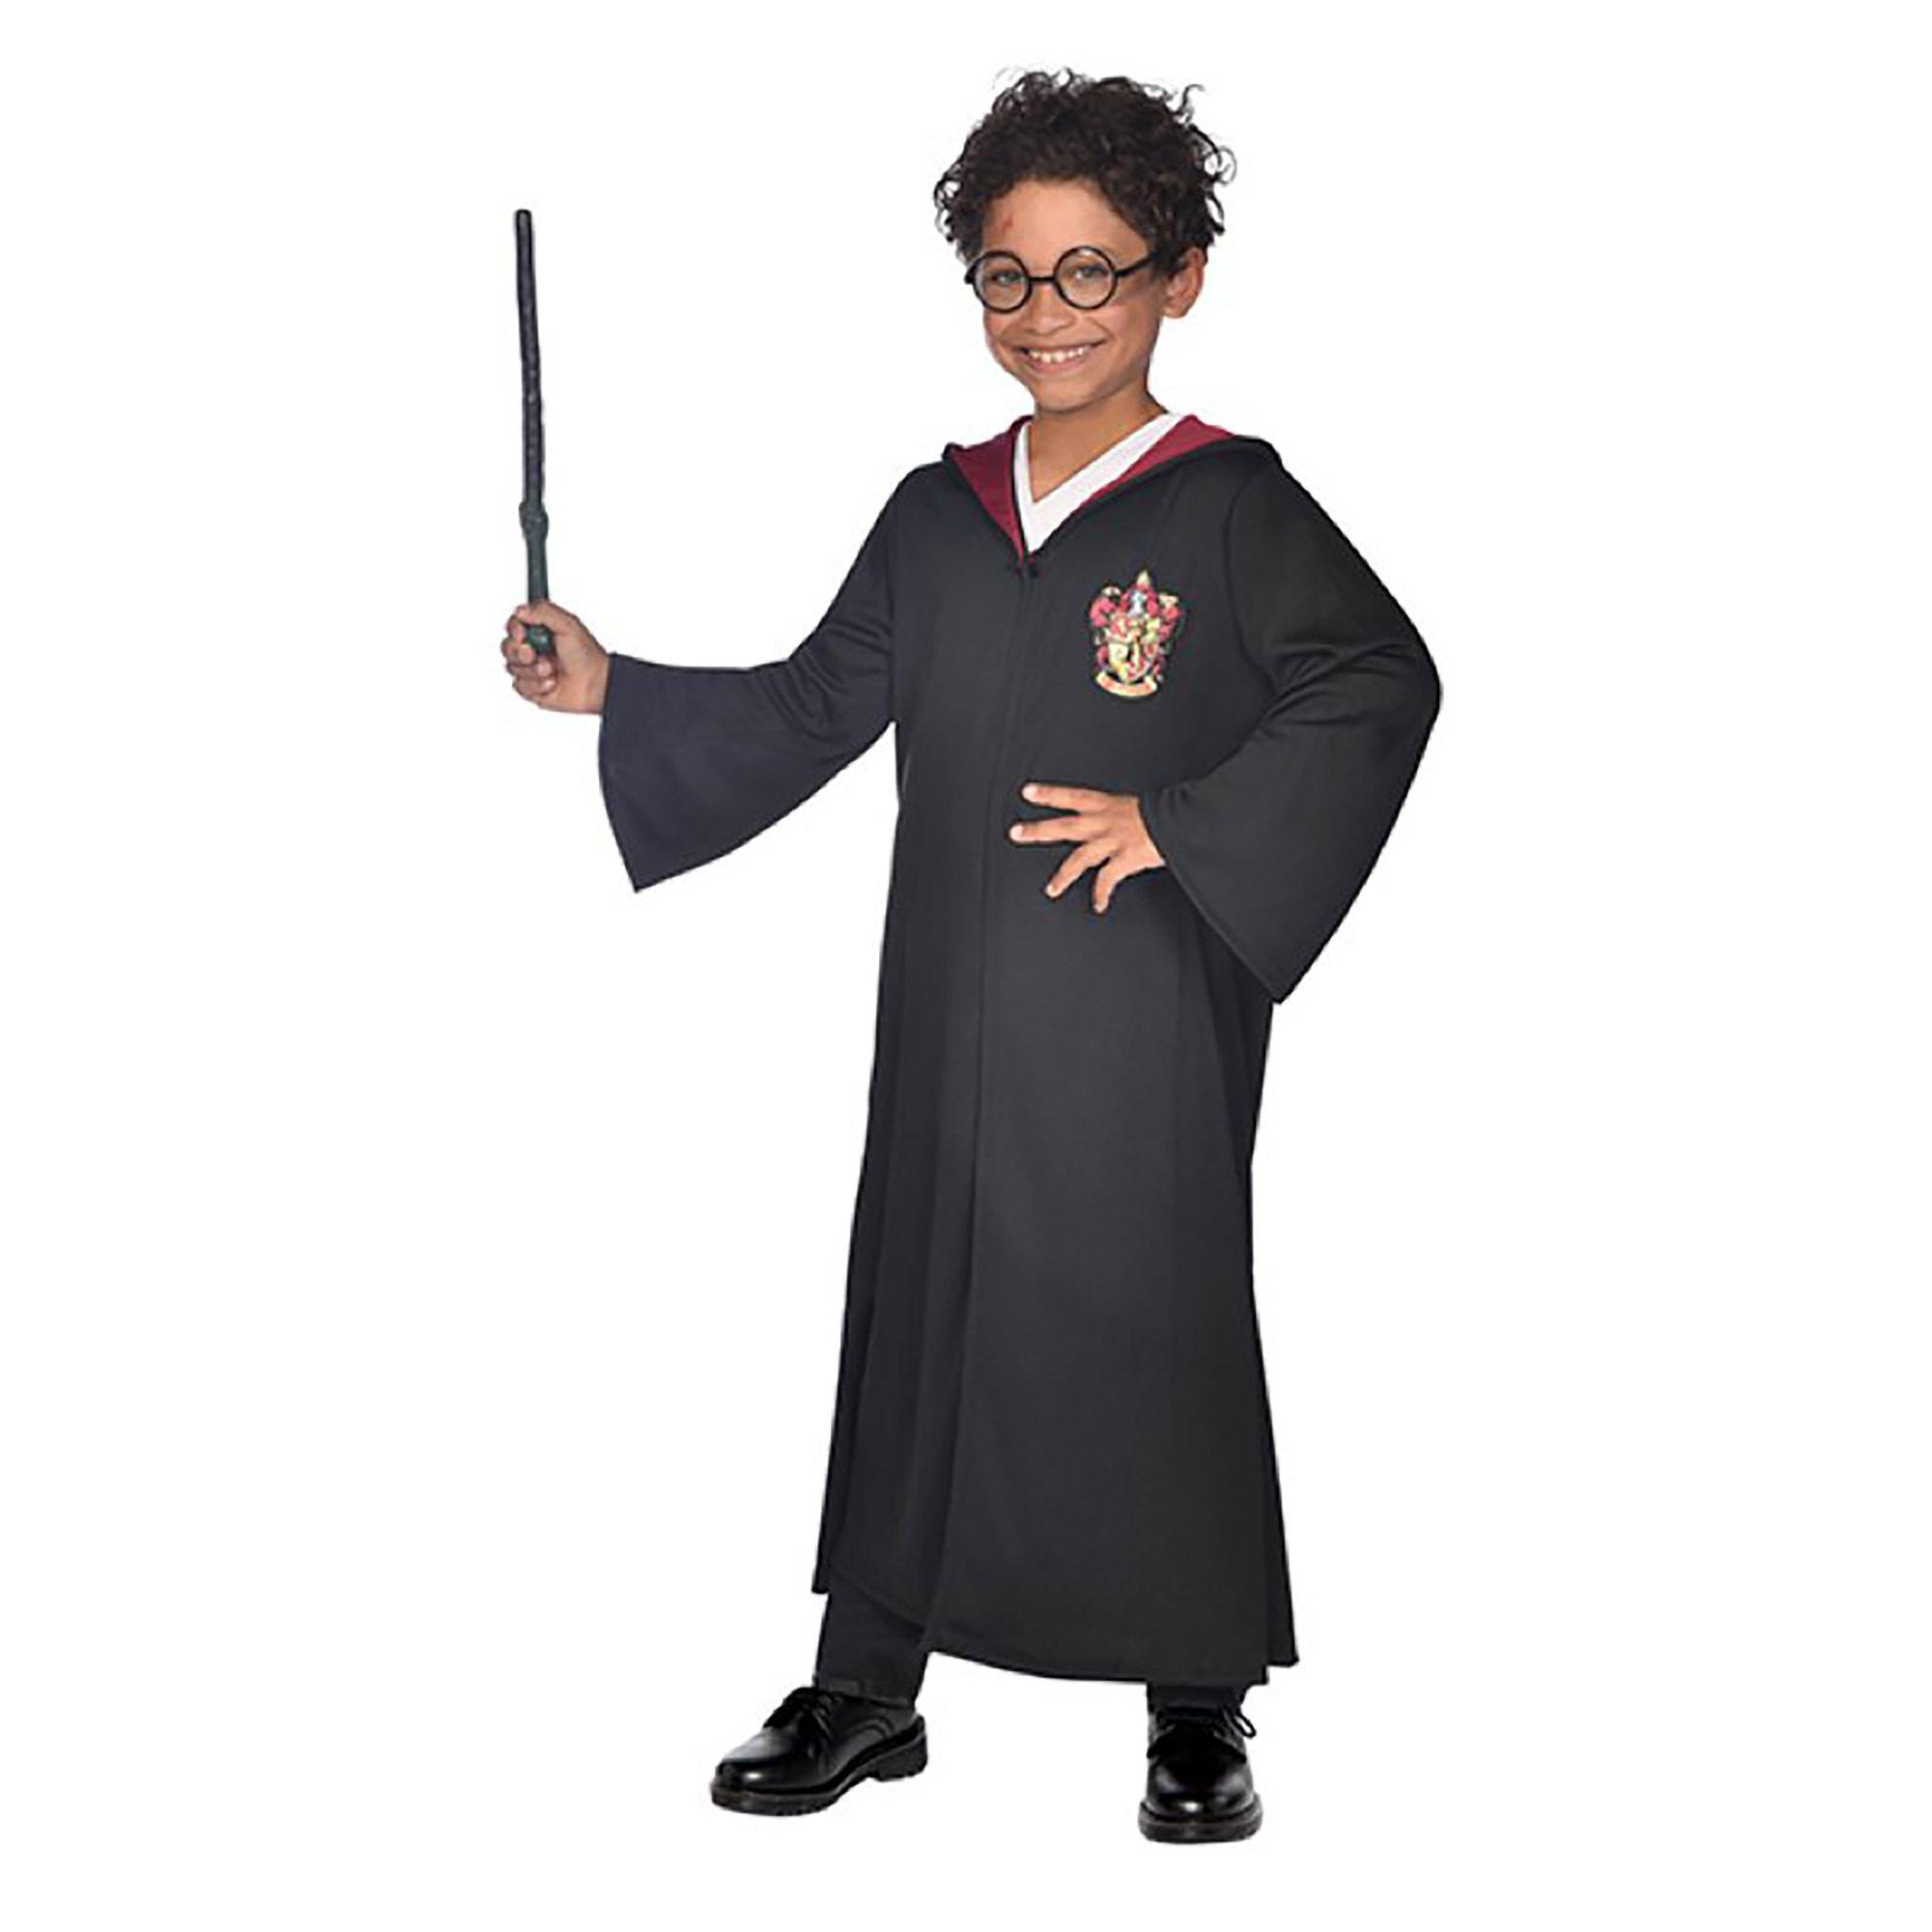 Image of amscan Harry Potter Kostüm mit Brille und Zauberstab - M